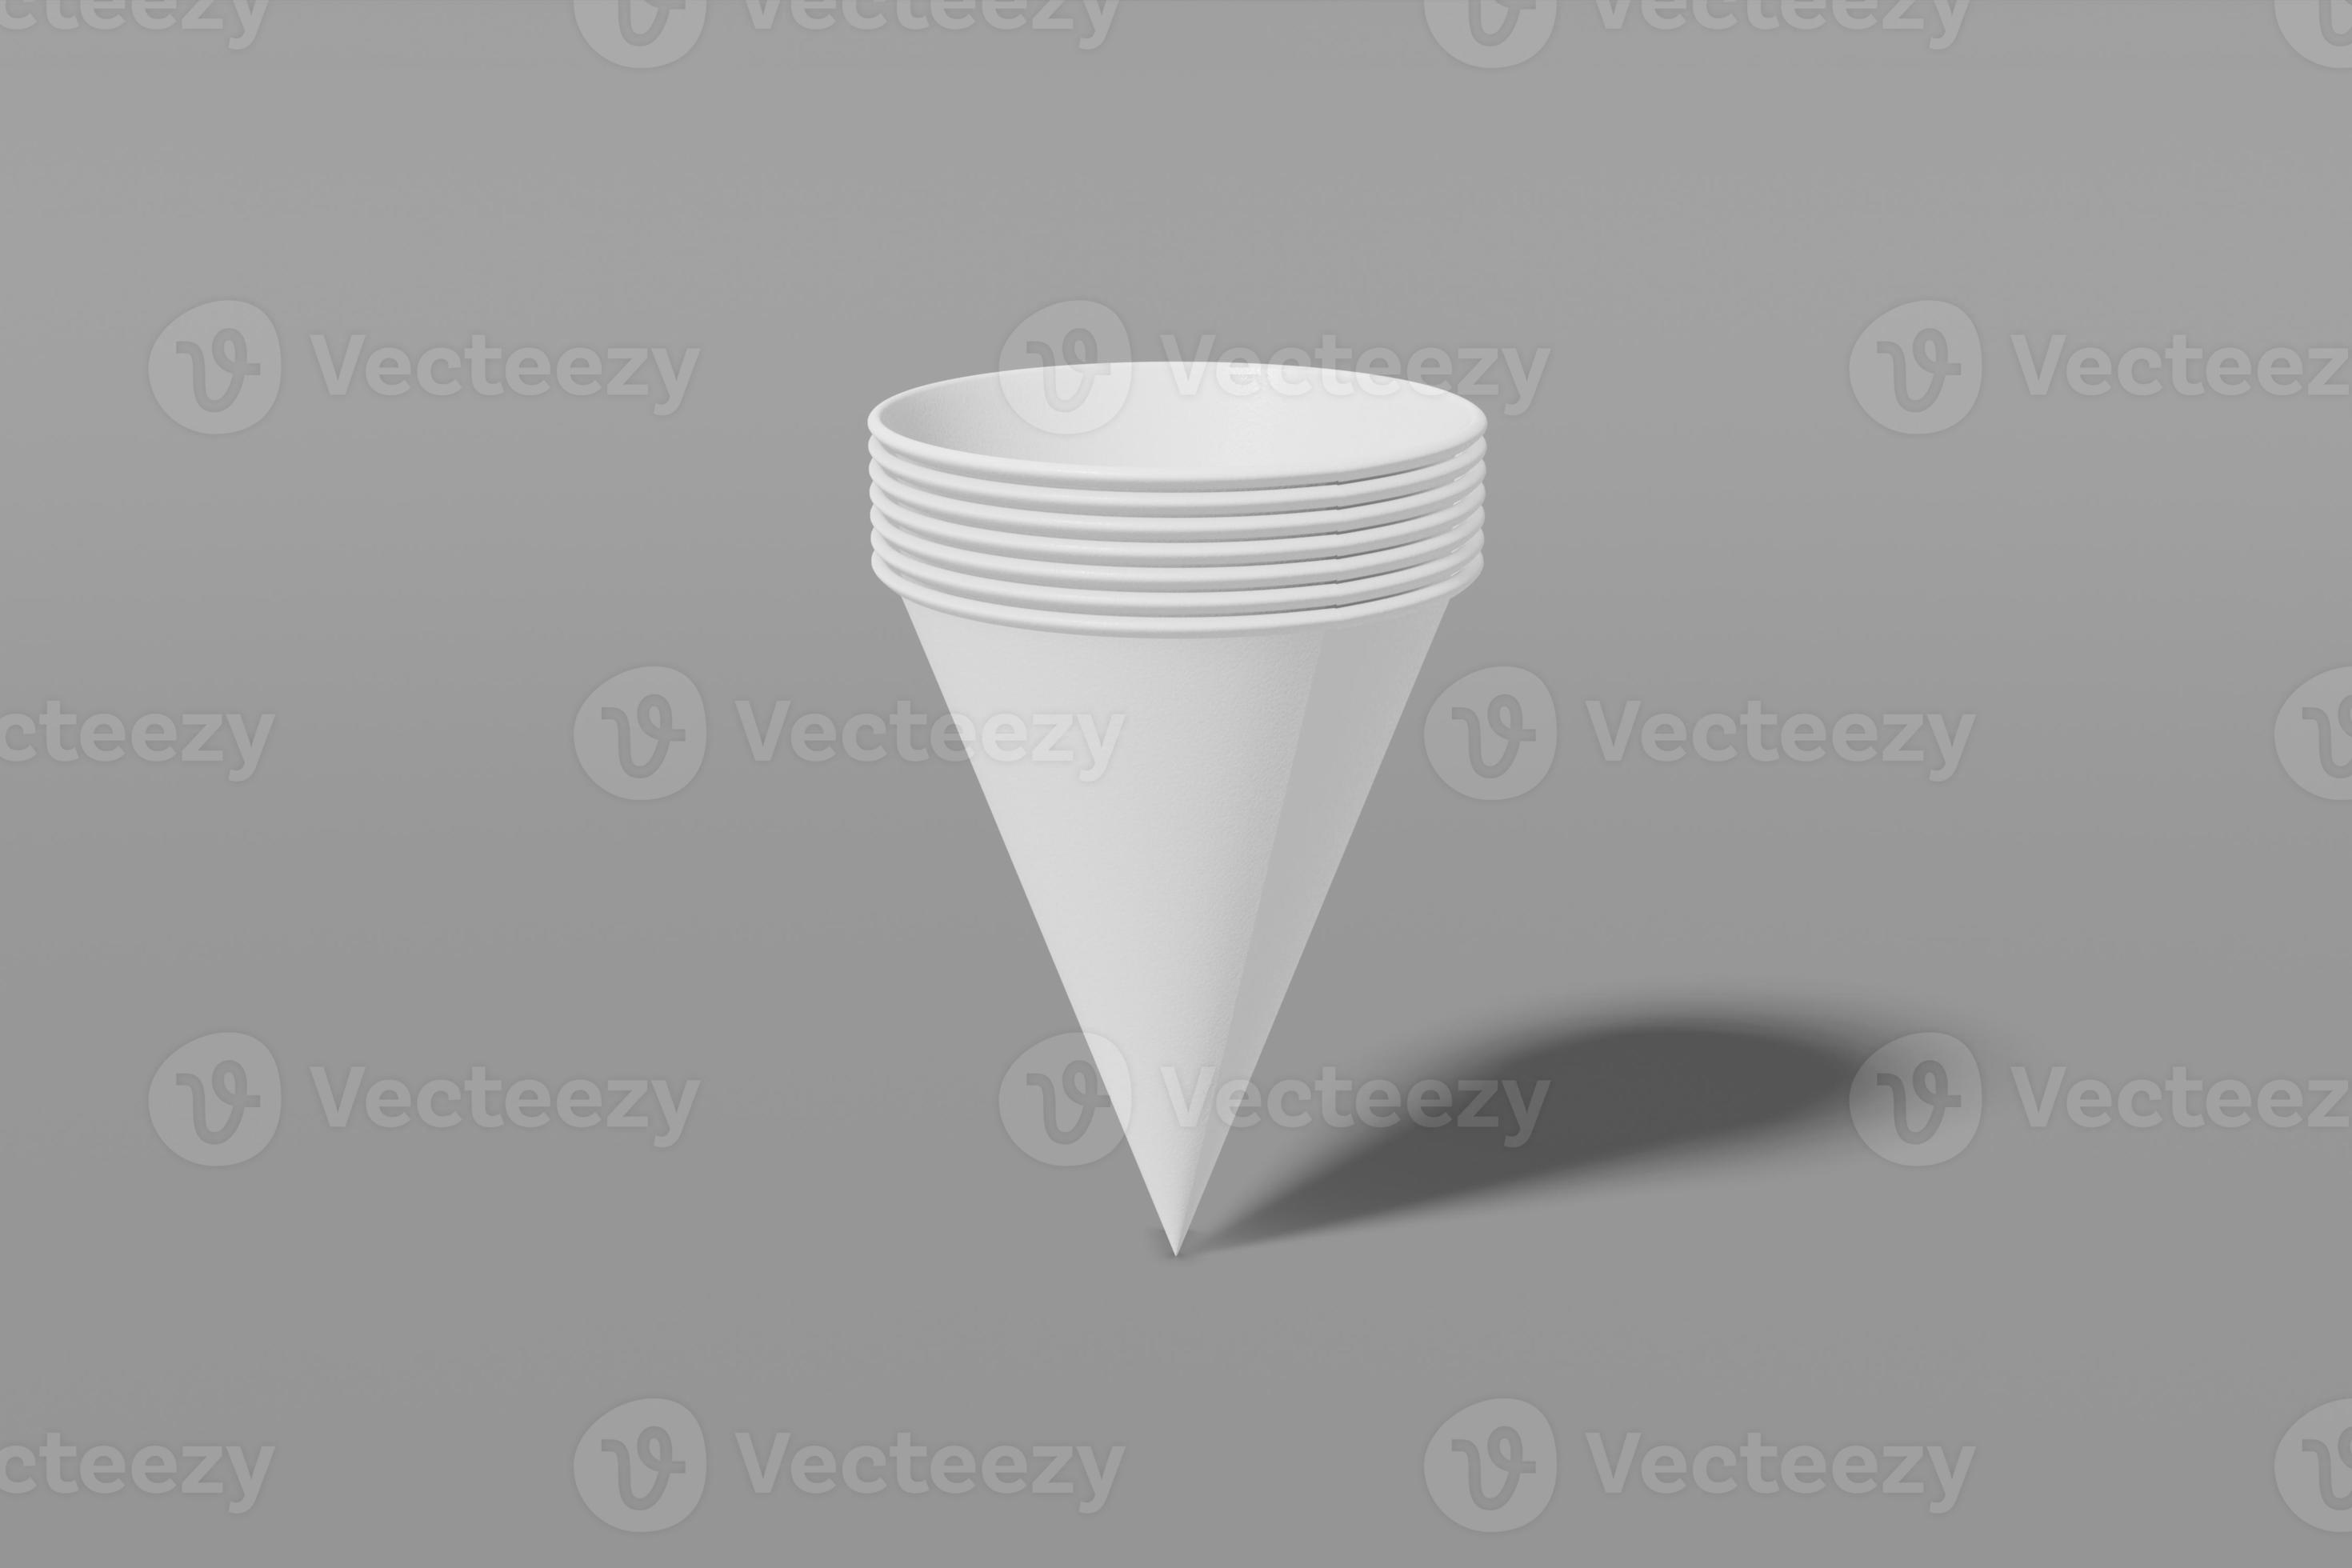 juego de vasos de maqueta de papel blanco en forma de cono anidados entre sí sobre un fondo gris. representación 3d foto